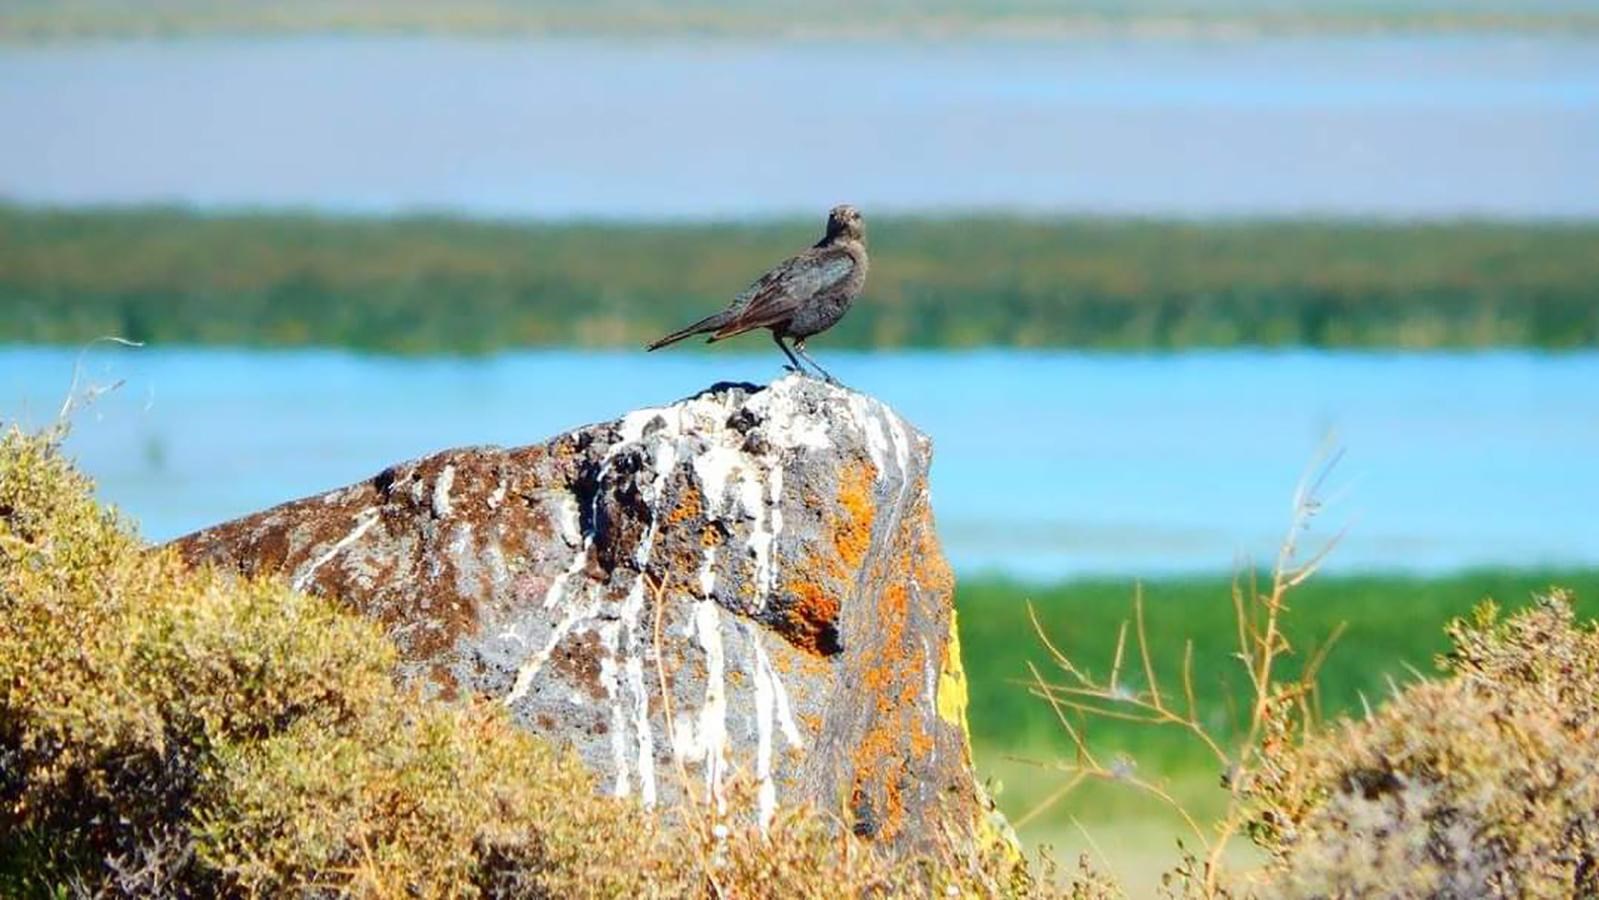 East Wildlife Overlook bird on a rock